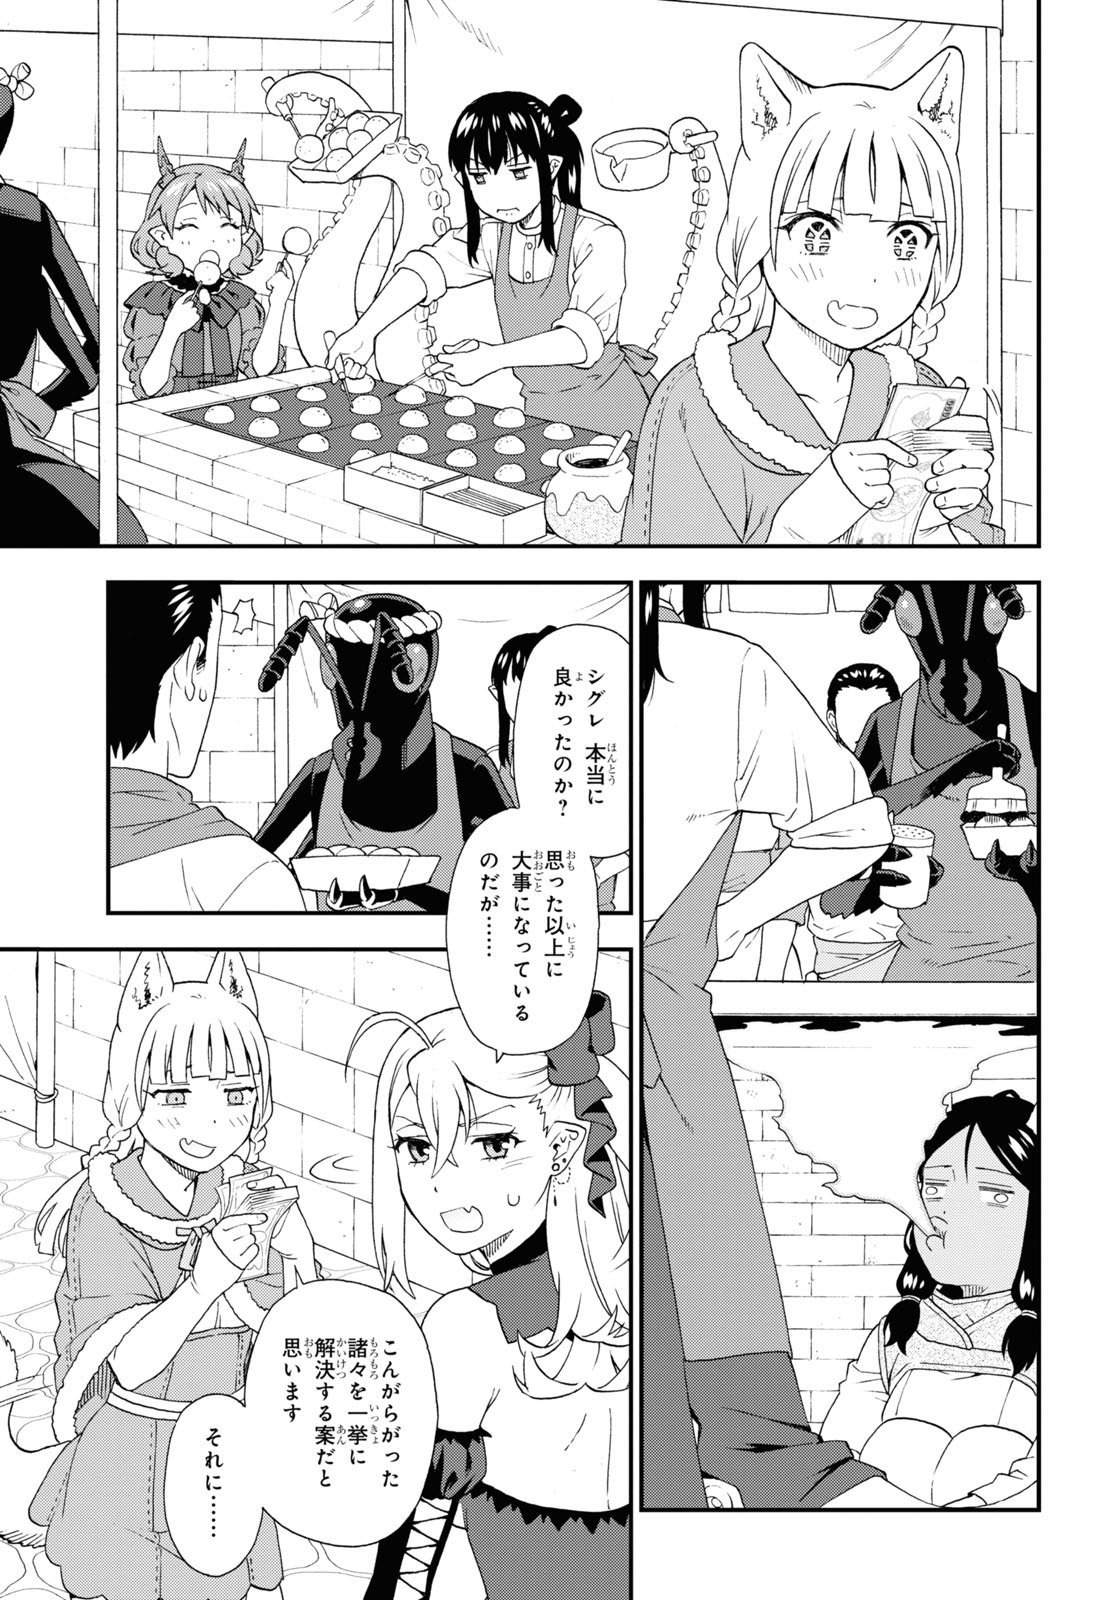 Kemono Michi - Chapter 71 - Page 3